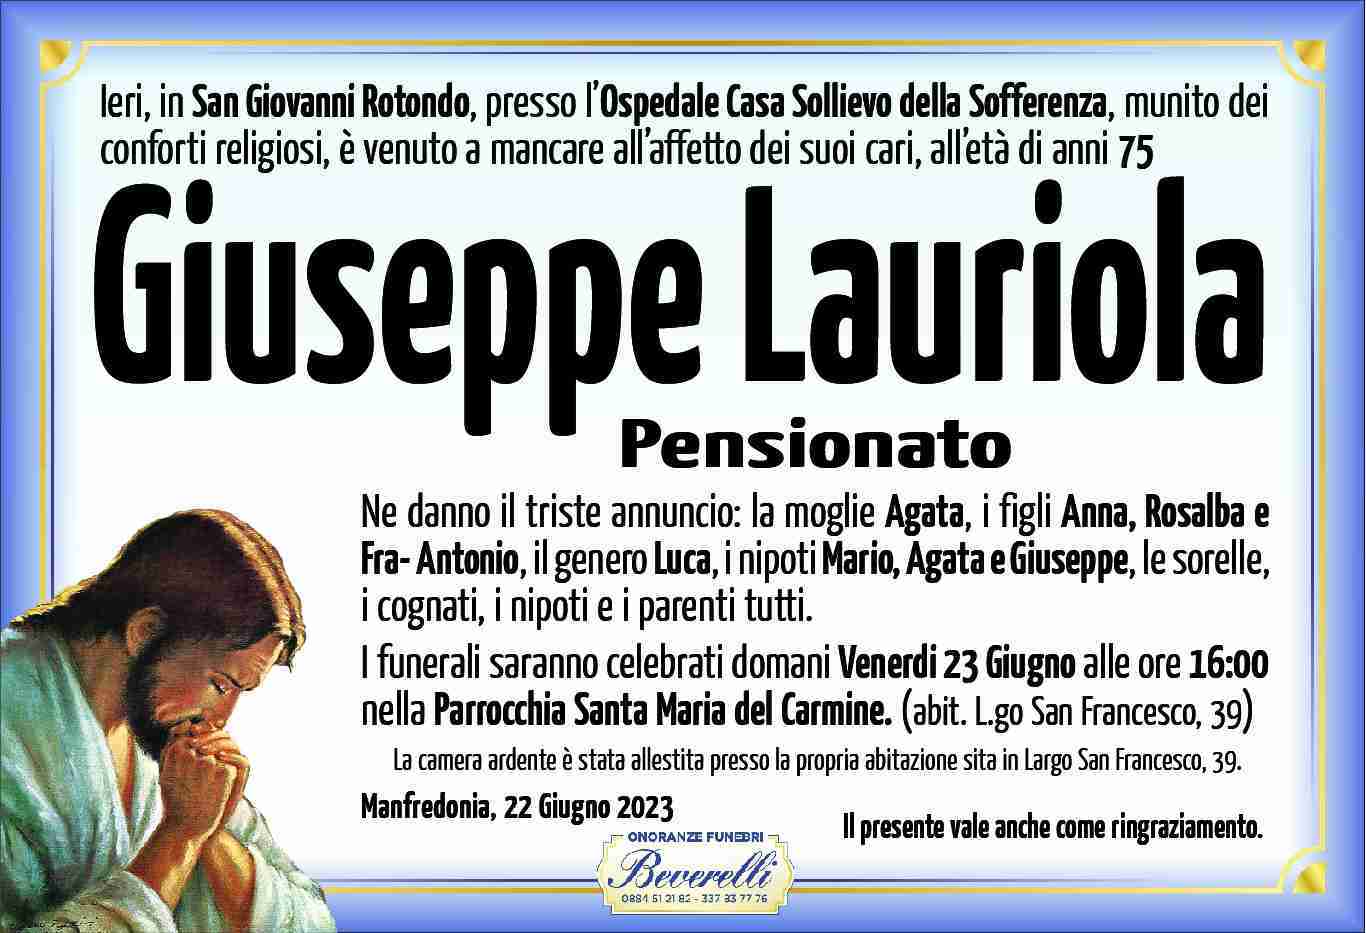 Giuseppe Lauriola